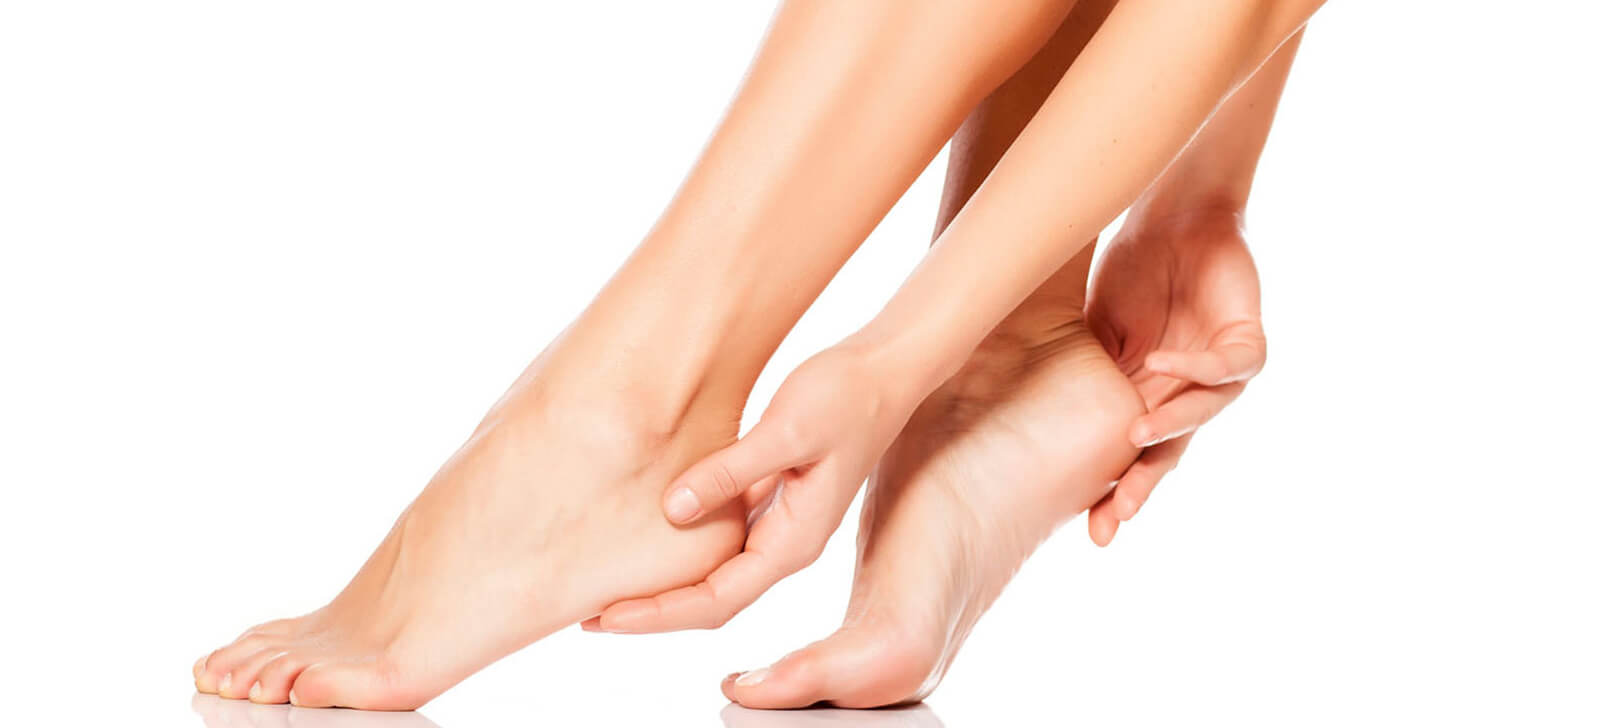 Principais causas de ressecamento e rachaduras nos pés